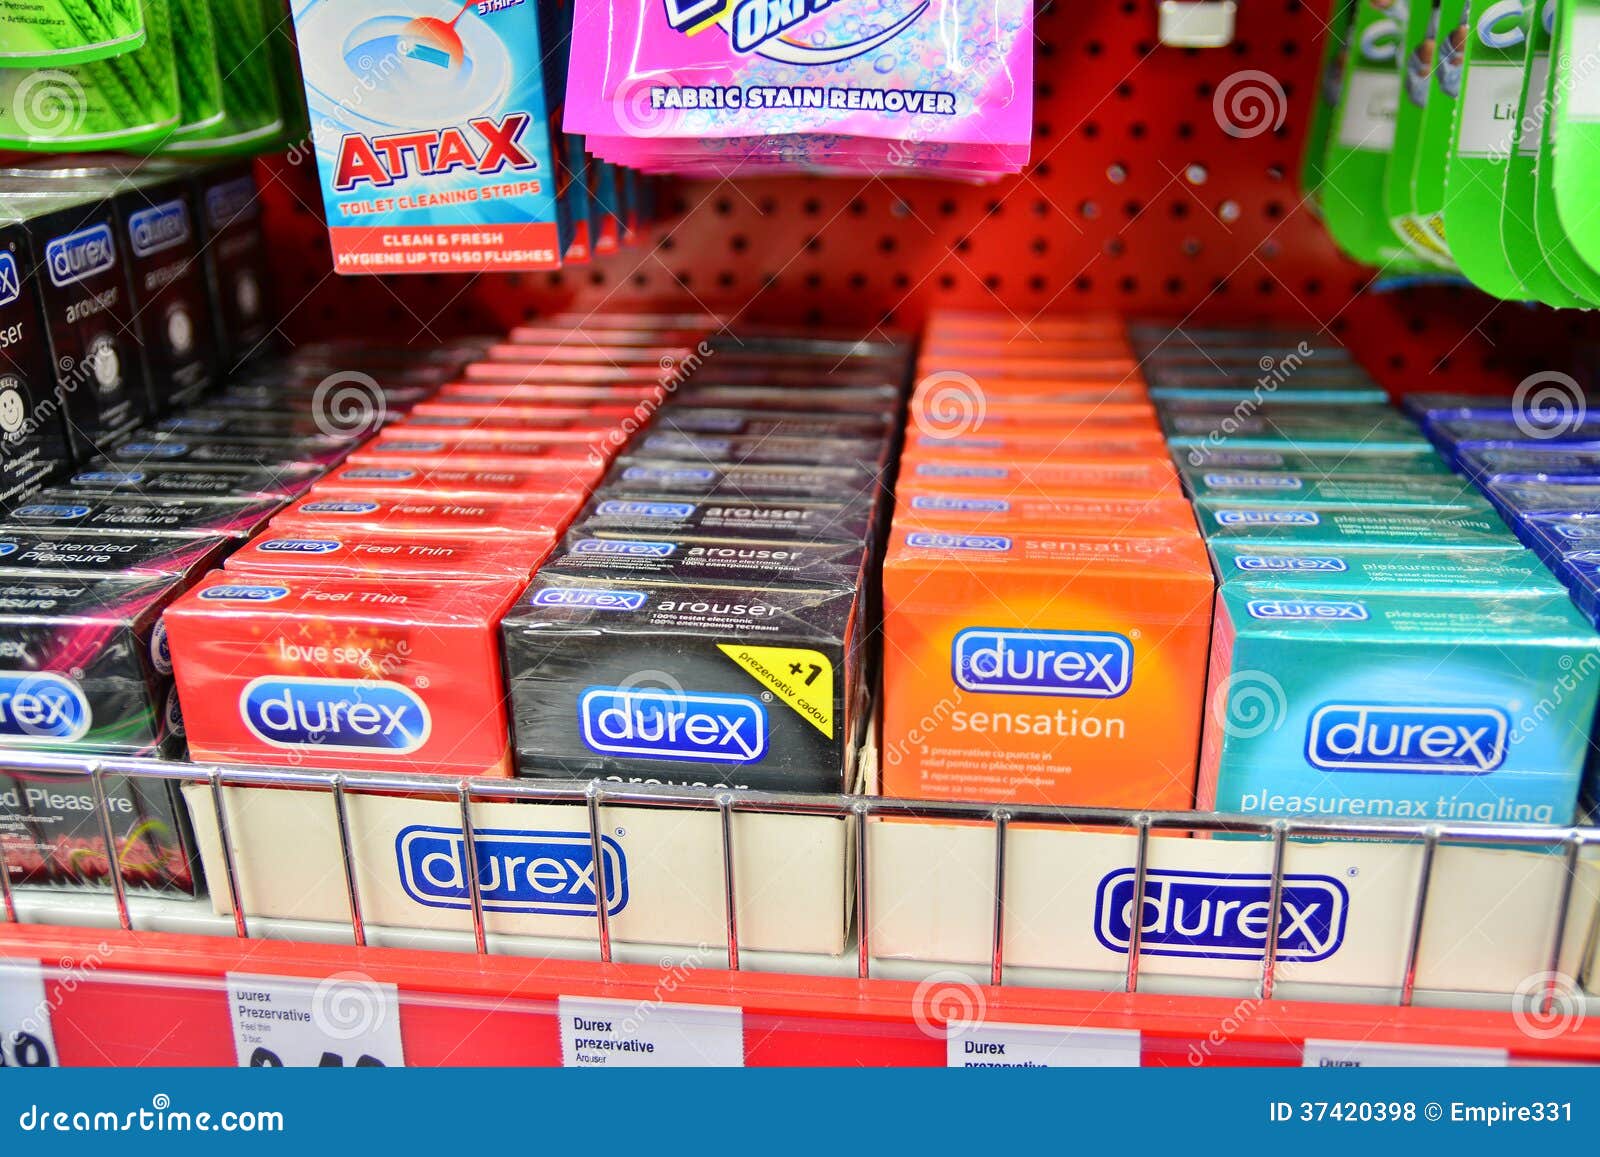 Durex condoms editorial stock photo. Image of condoms - 37420398